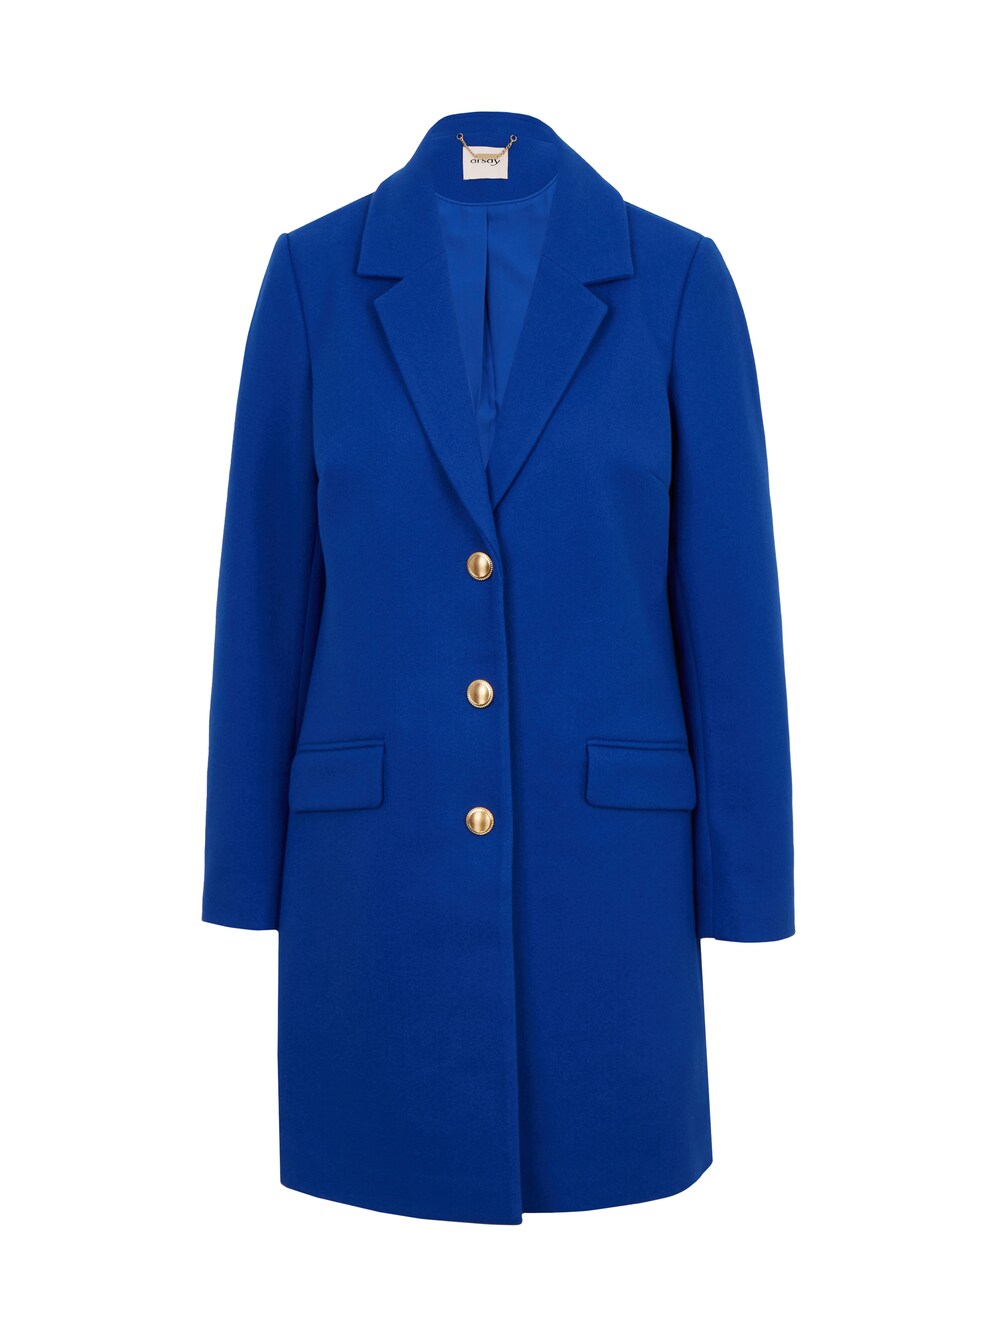 Межсезонное пальто Orsay, королевский синий межсезонное пальто orsay светло серый